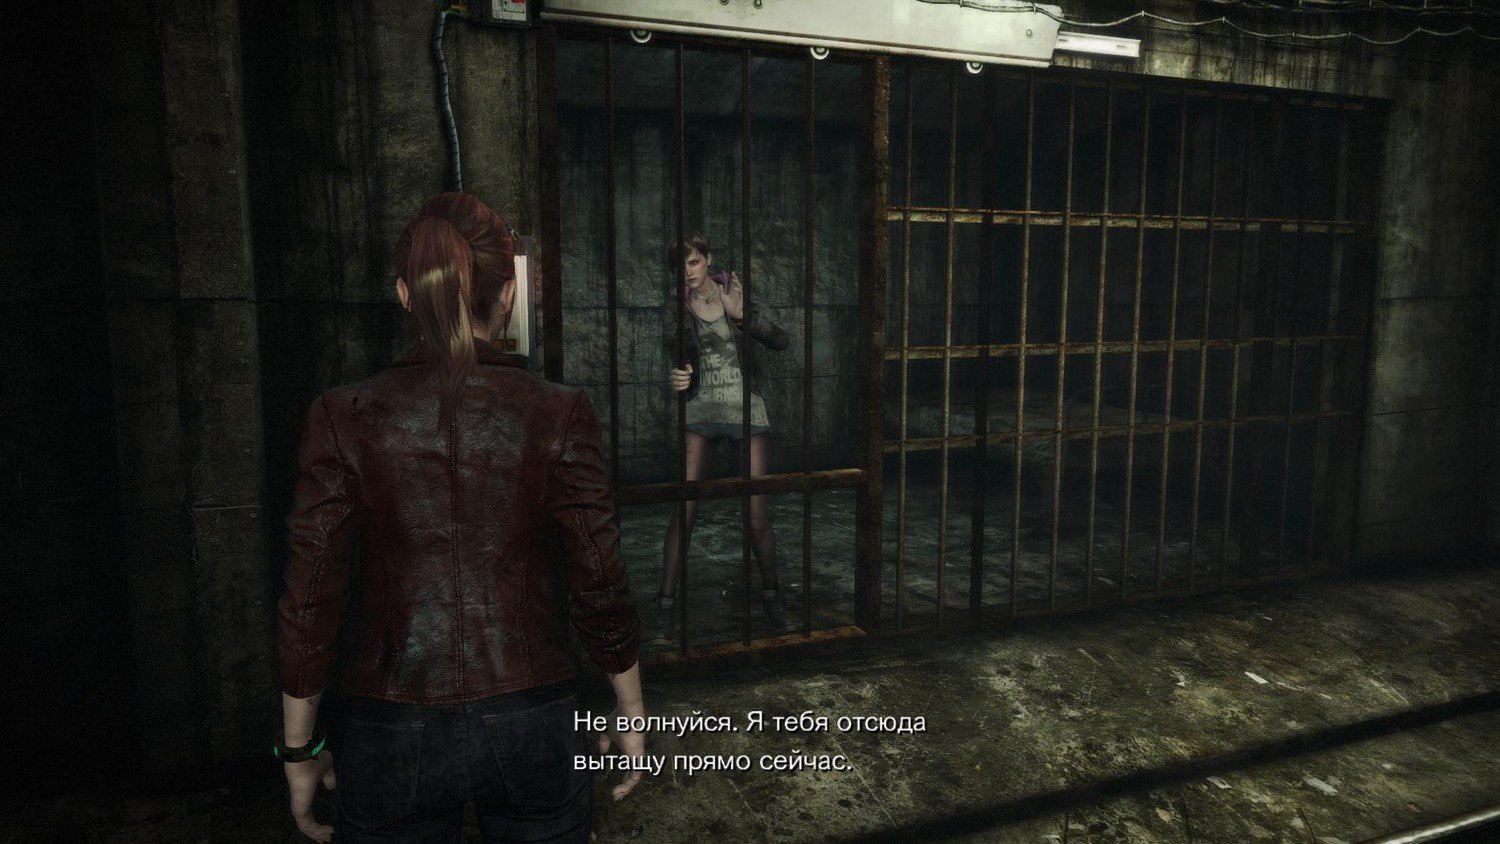 Скриншот 1 к игре Resident Evil Revelations 2: Episode 1-4 [v 5.0] (2015) скачать торрент RePack